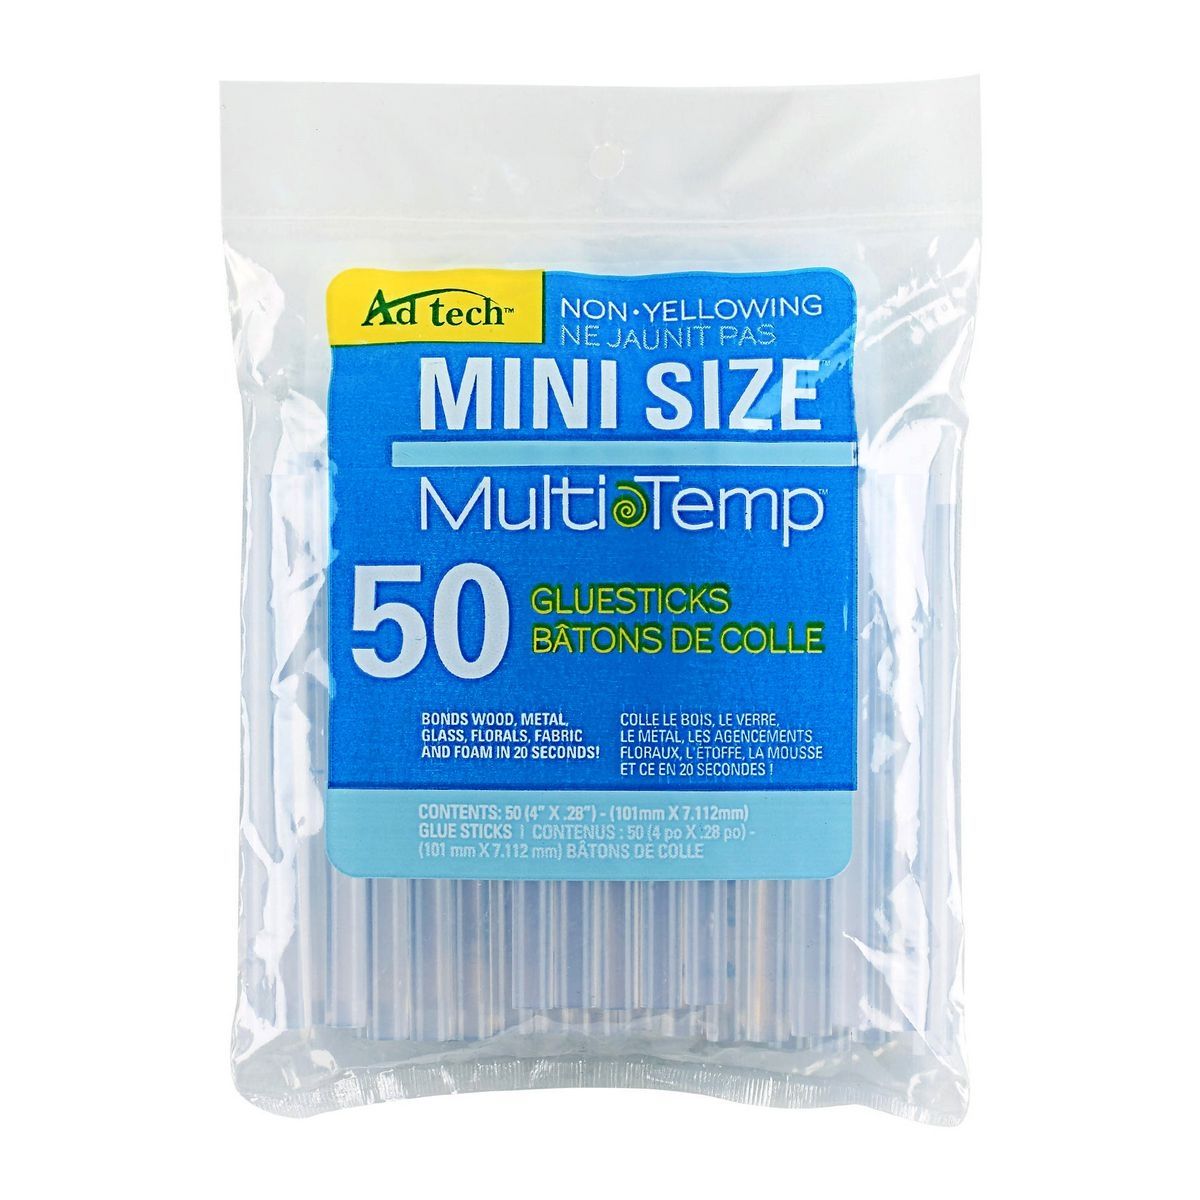 AD TECH 50 Piece MultiTemp? Mini Glue Sticks